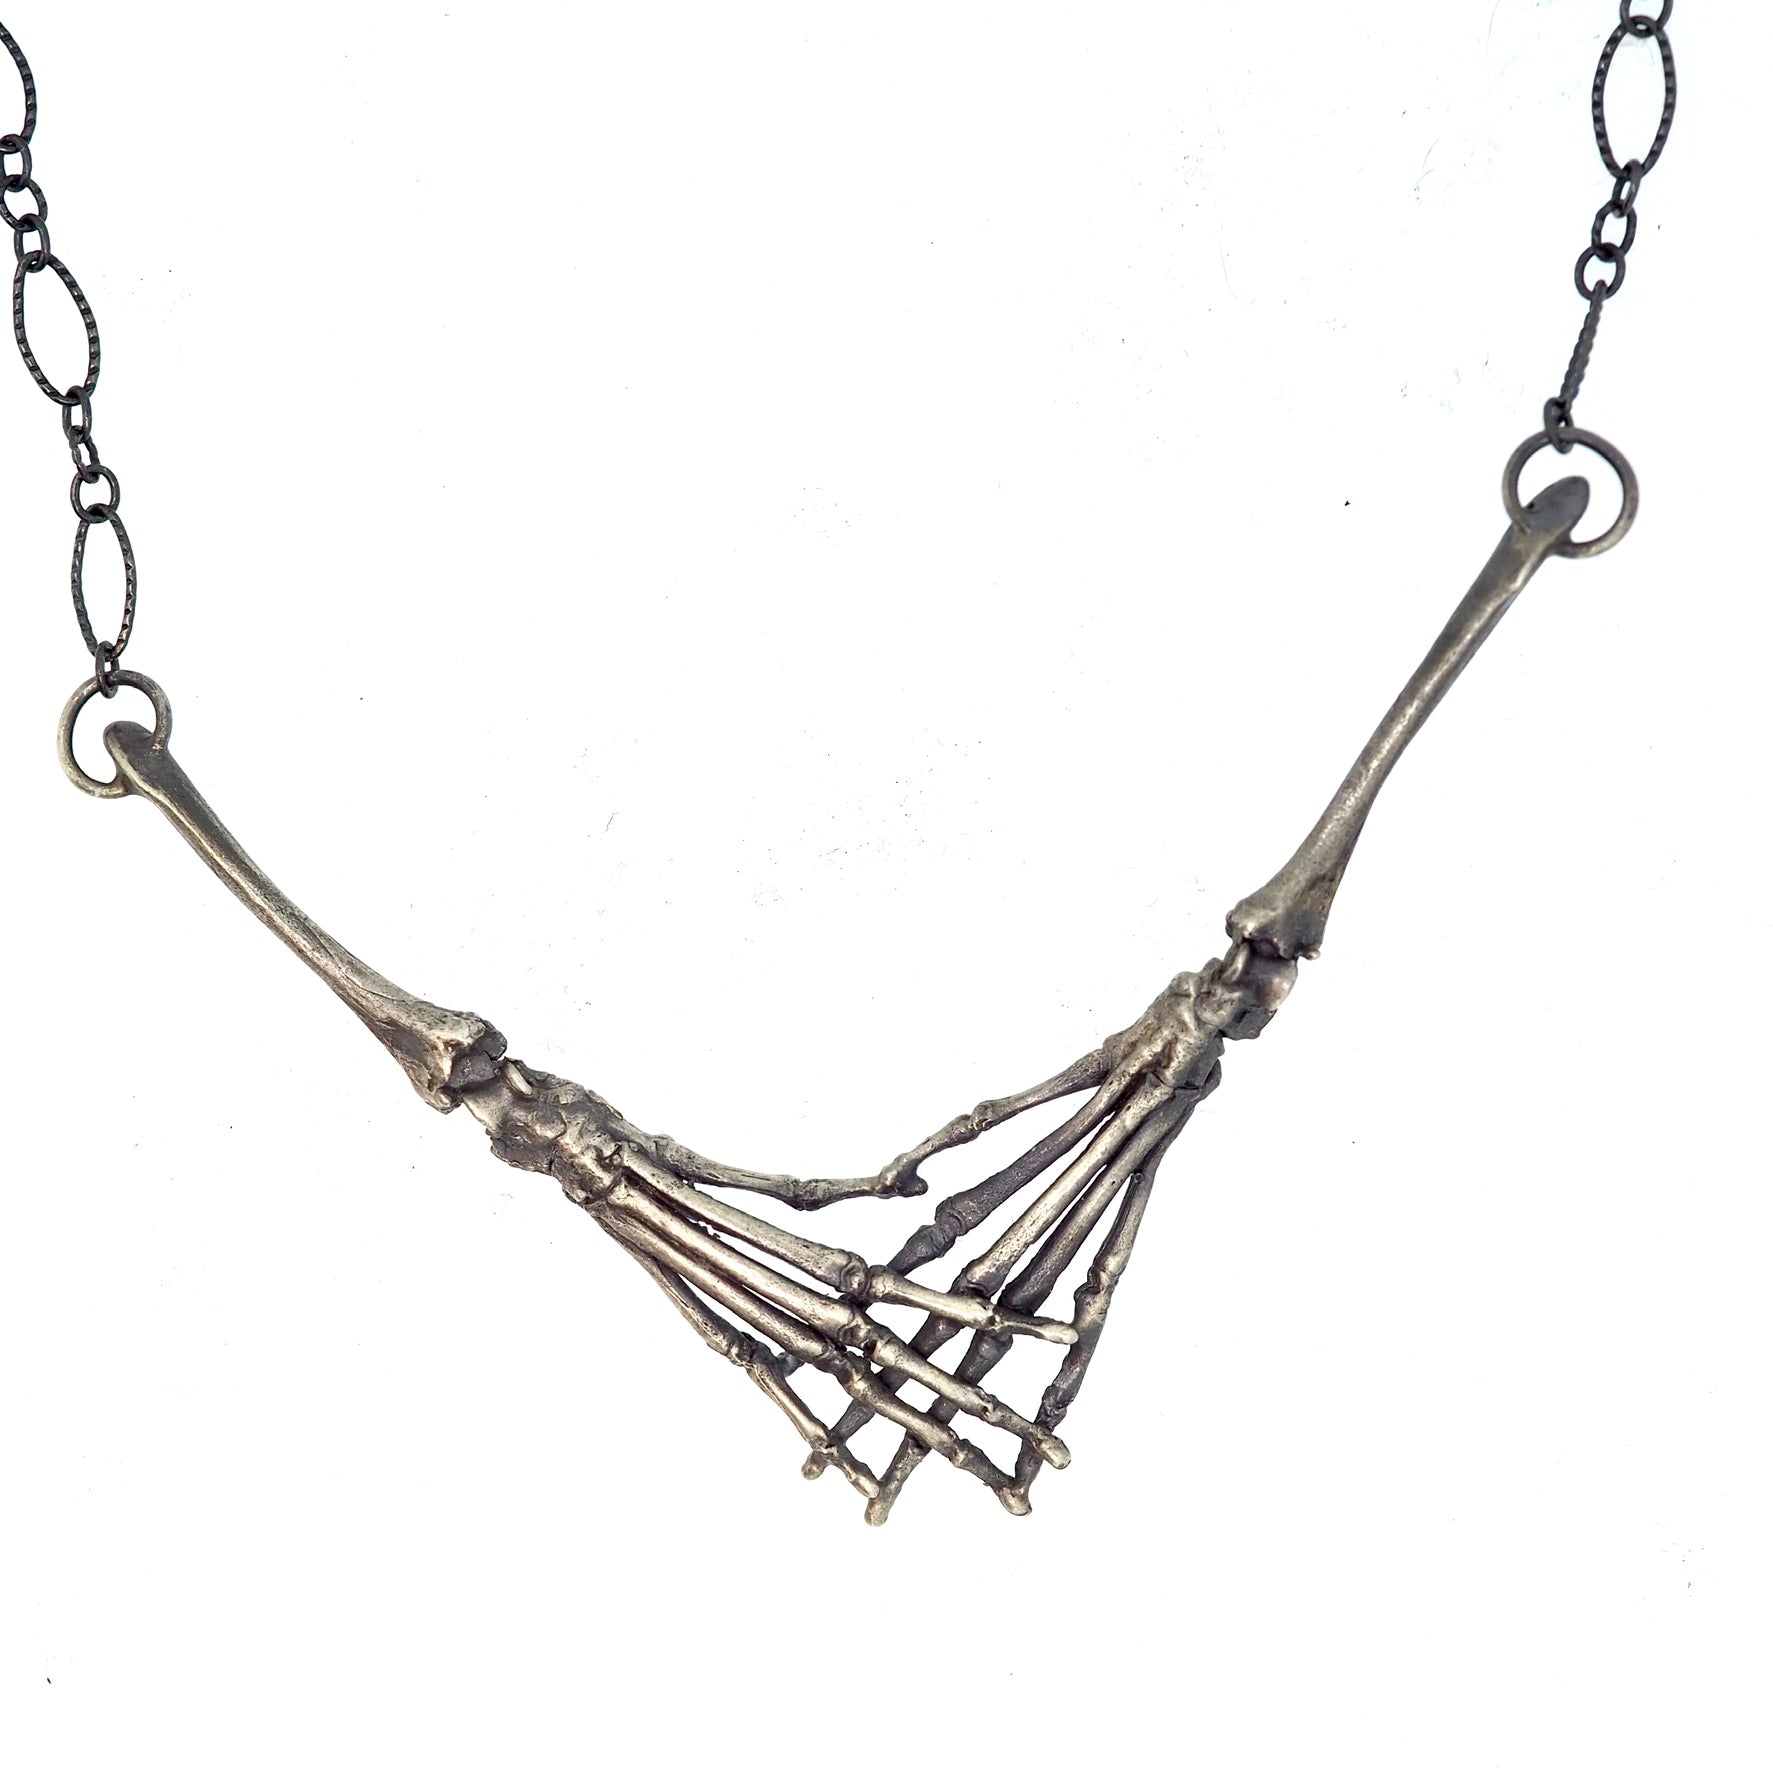 Skeletal necklace